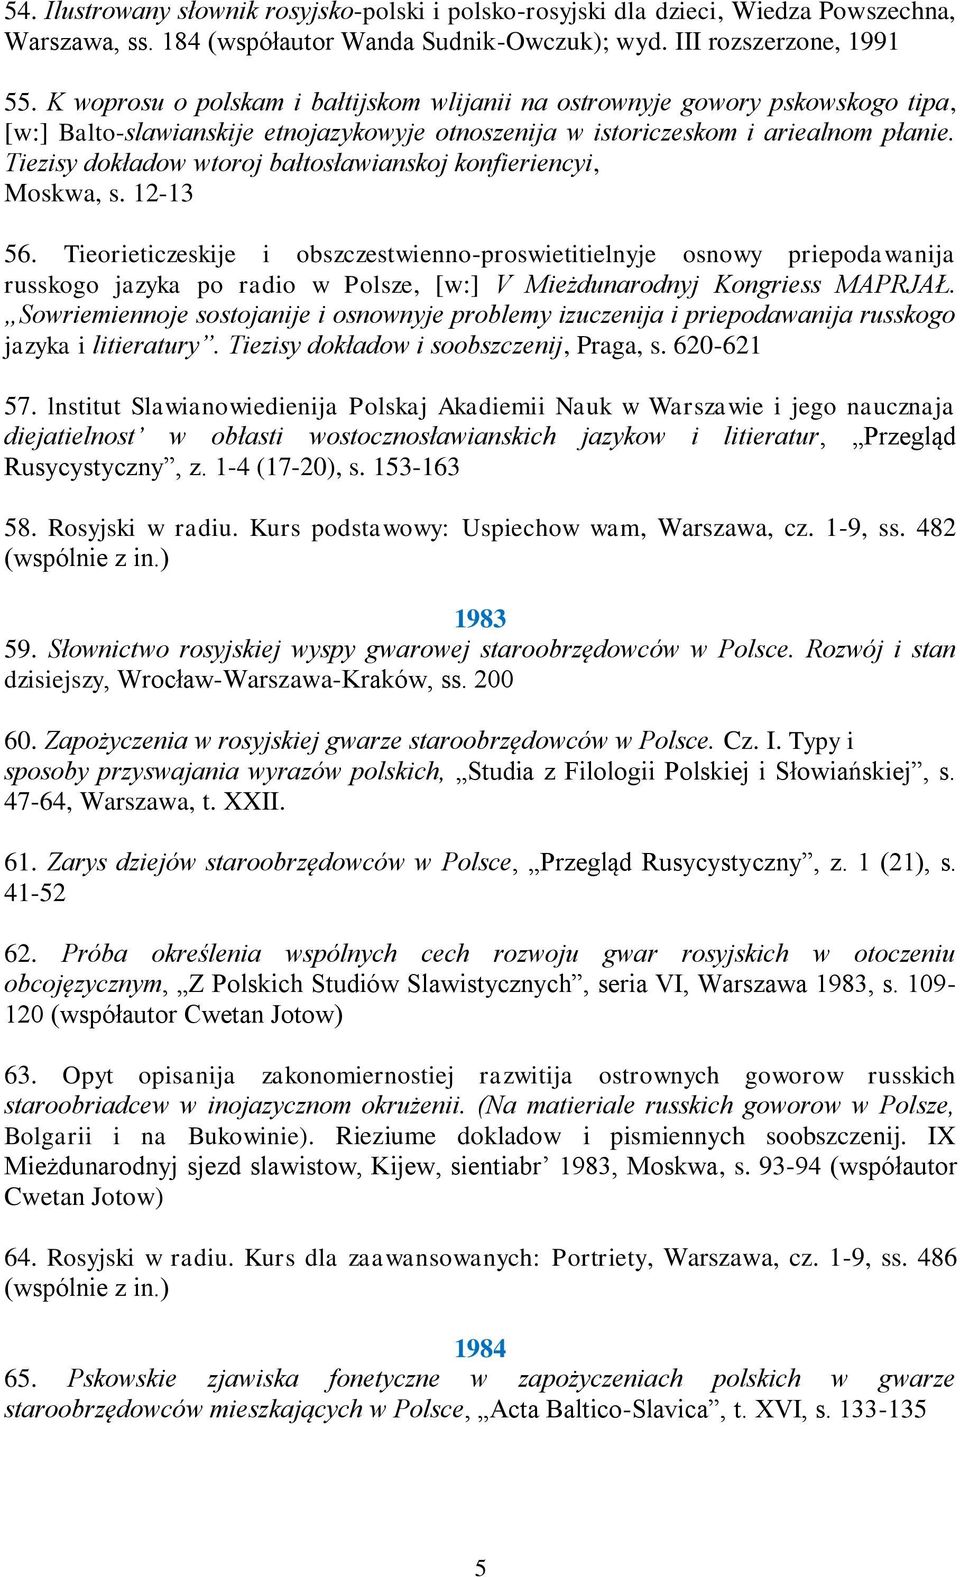 Tiezisy dokładow wtoroj bałtosławianskoj konfieriencyi, Moskwa, s. 12-13 56.